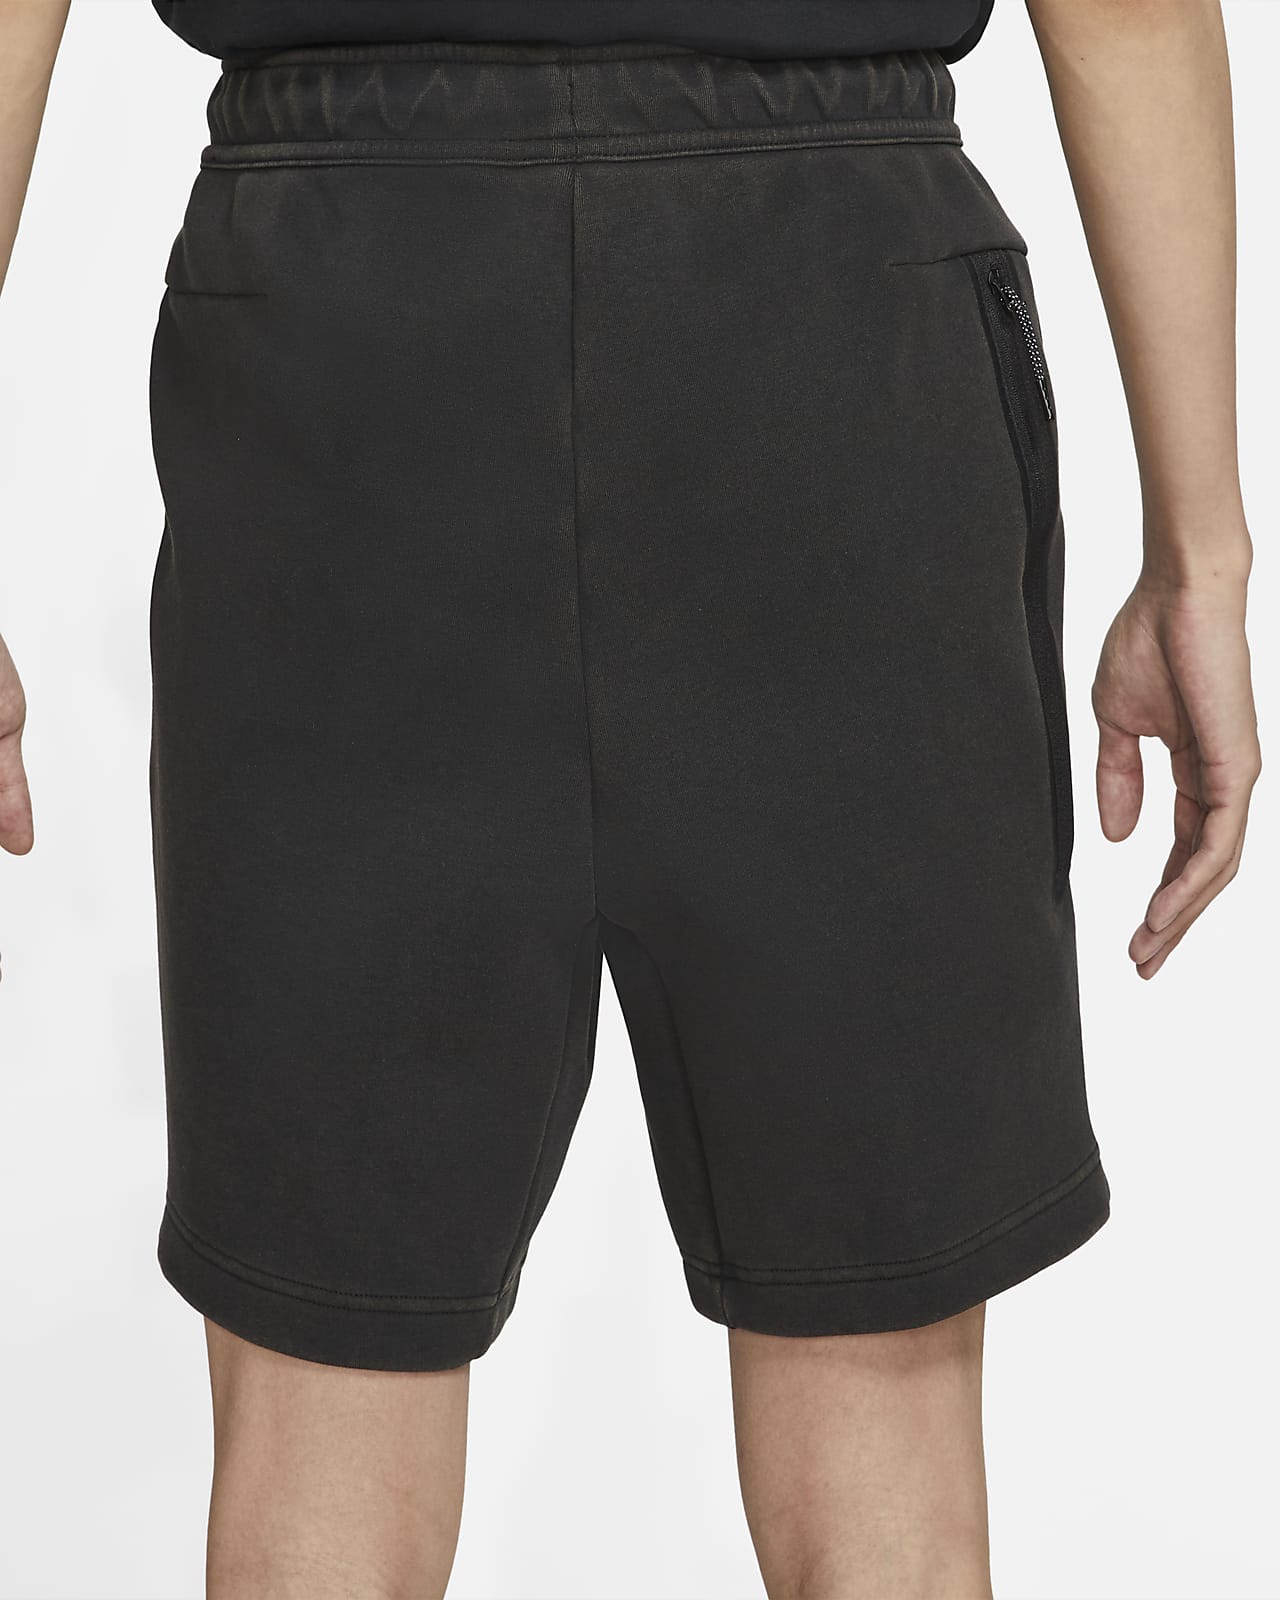 men's shorts nike sportswear tech fleece